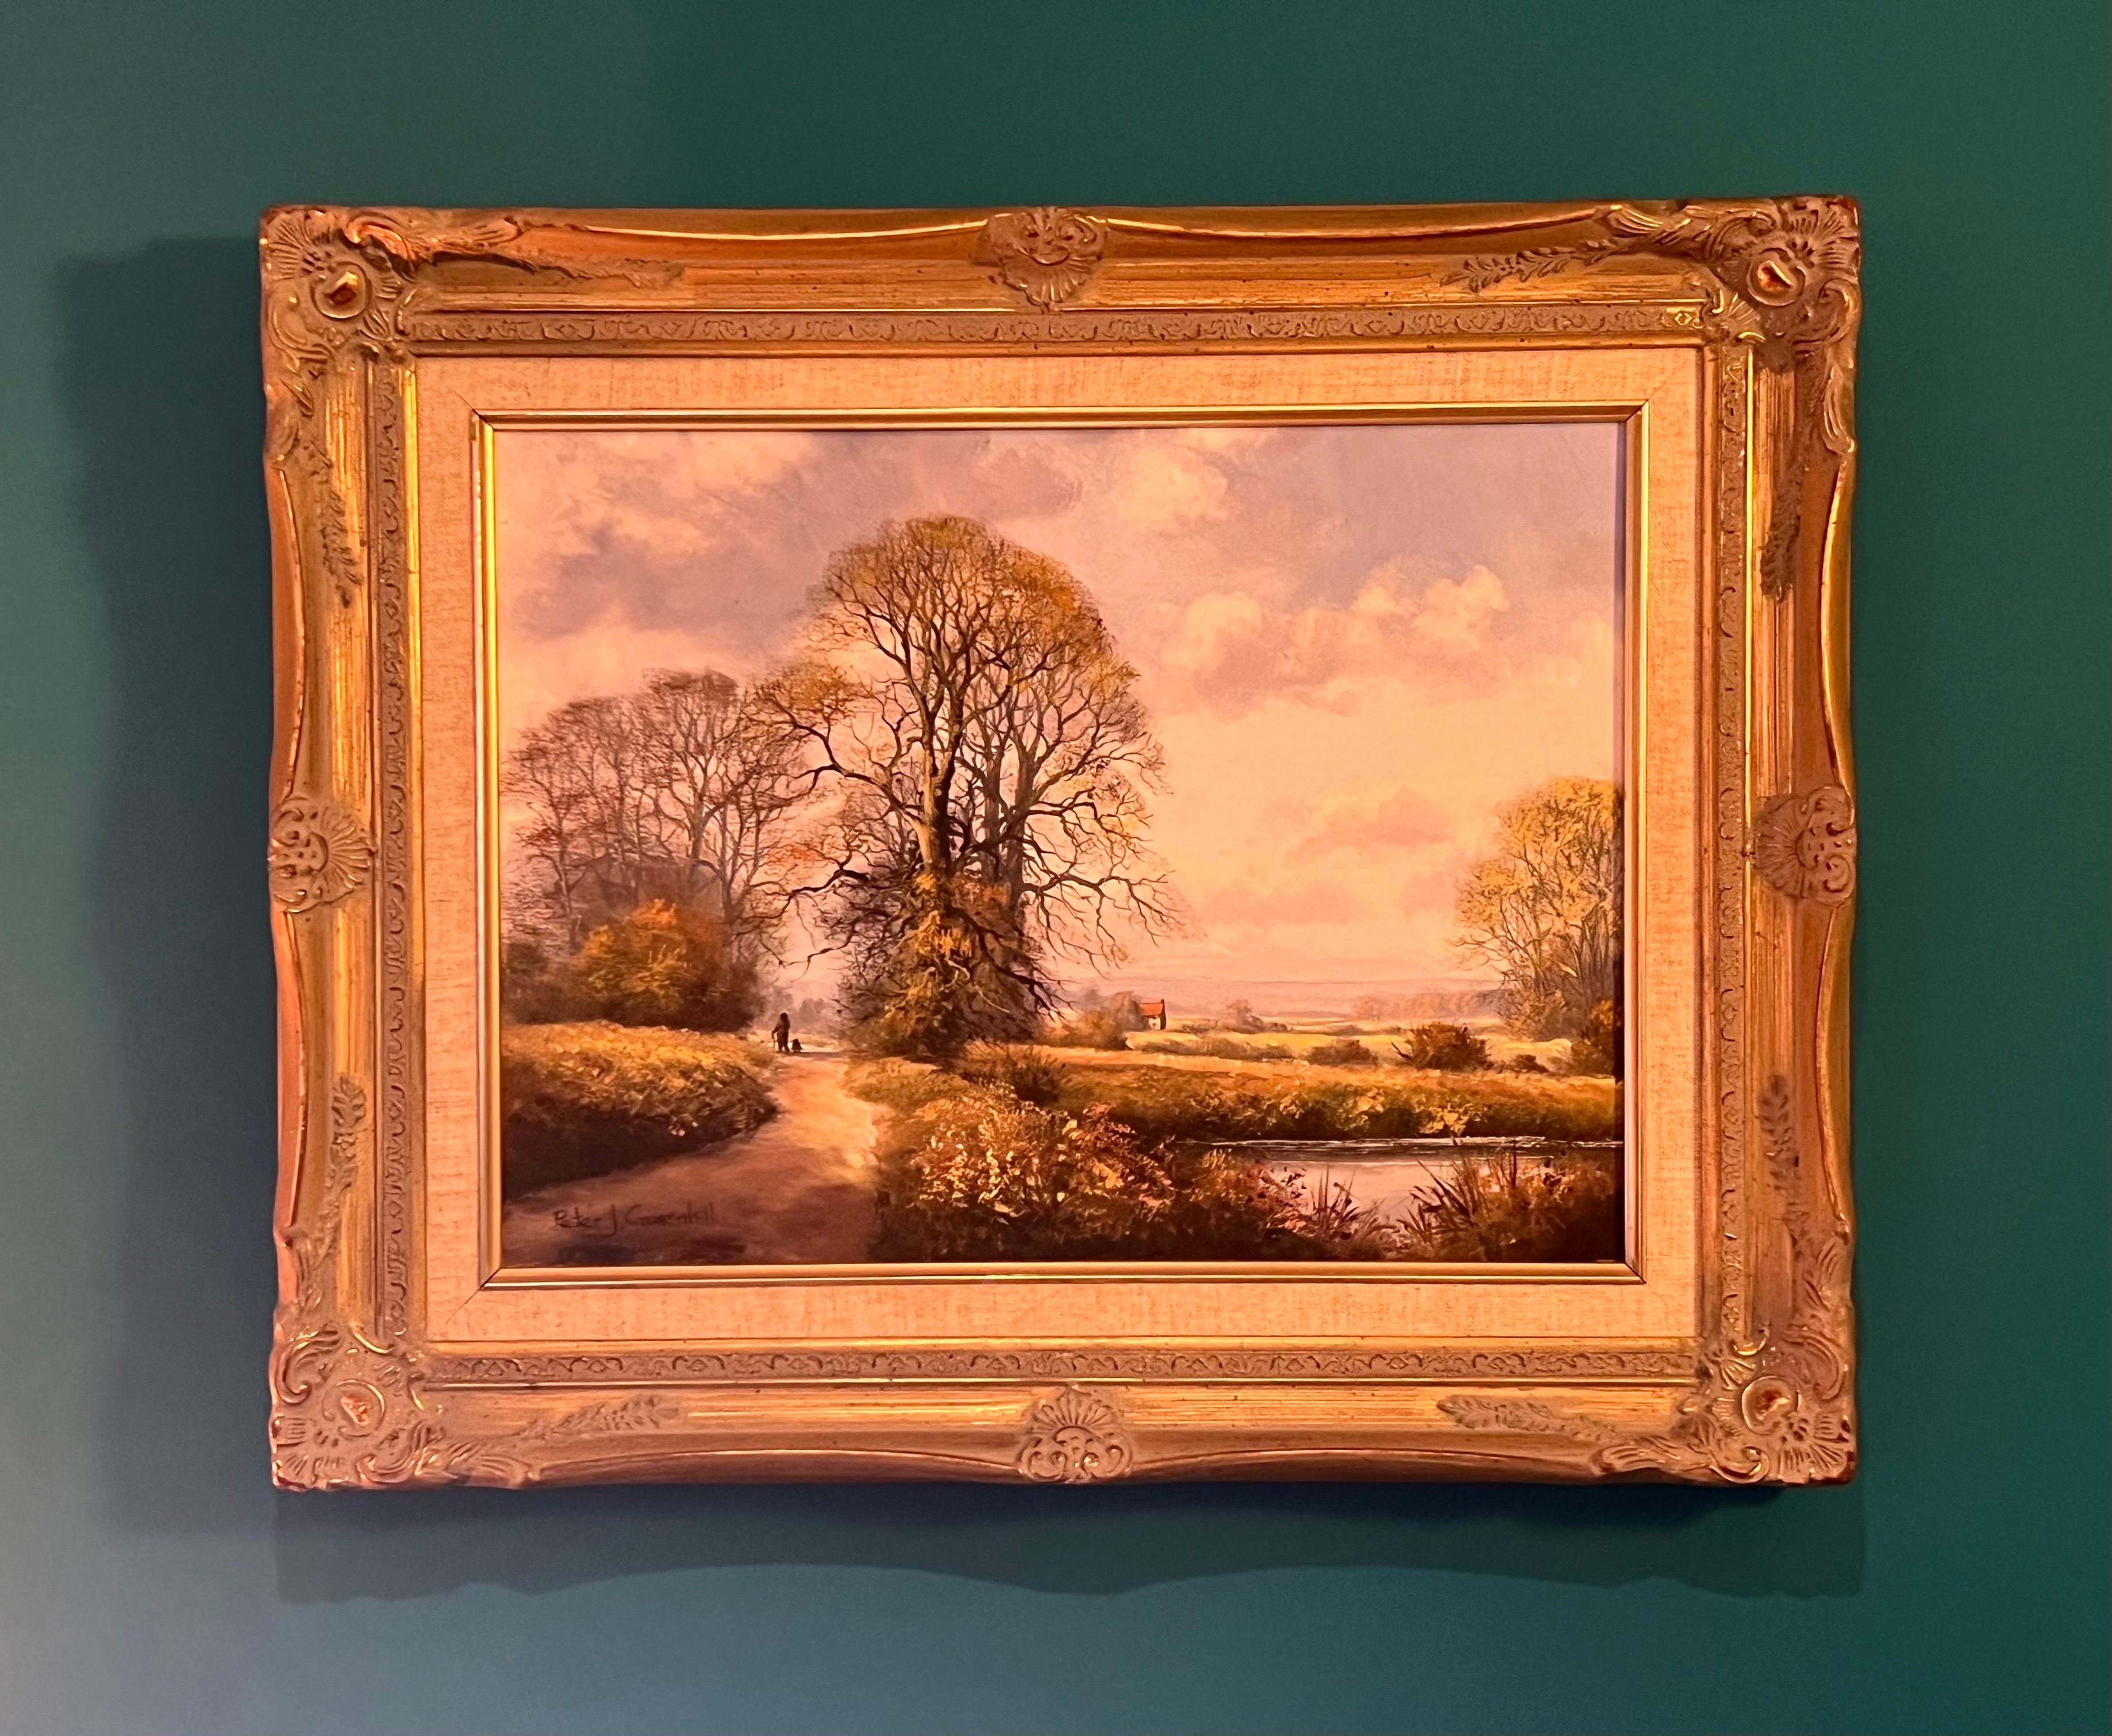 Bauernhaus an einem Fluss in der englischen Landschaft des 20. Jahrhunderts des britischen Künstlers – Painting von Peter J Greenhill